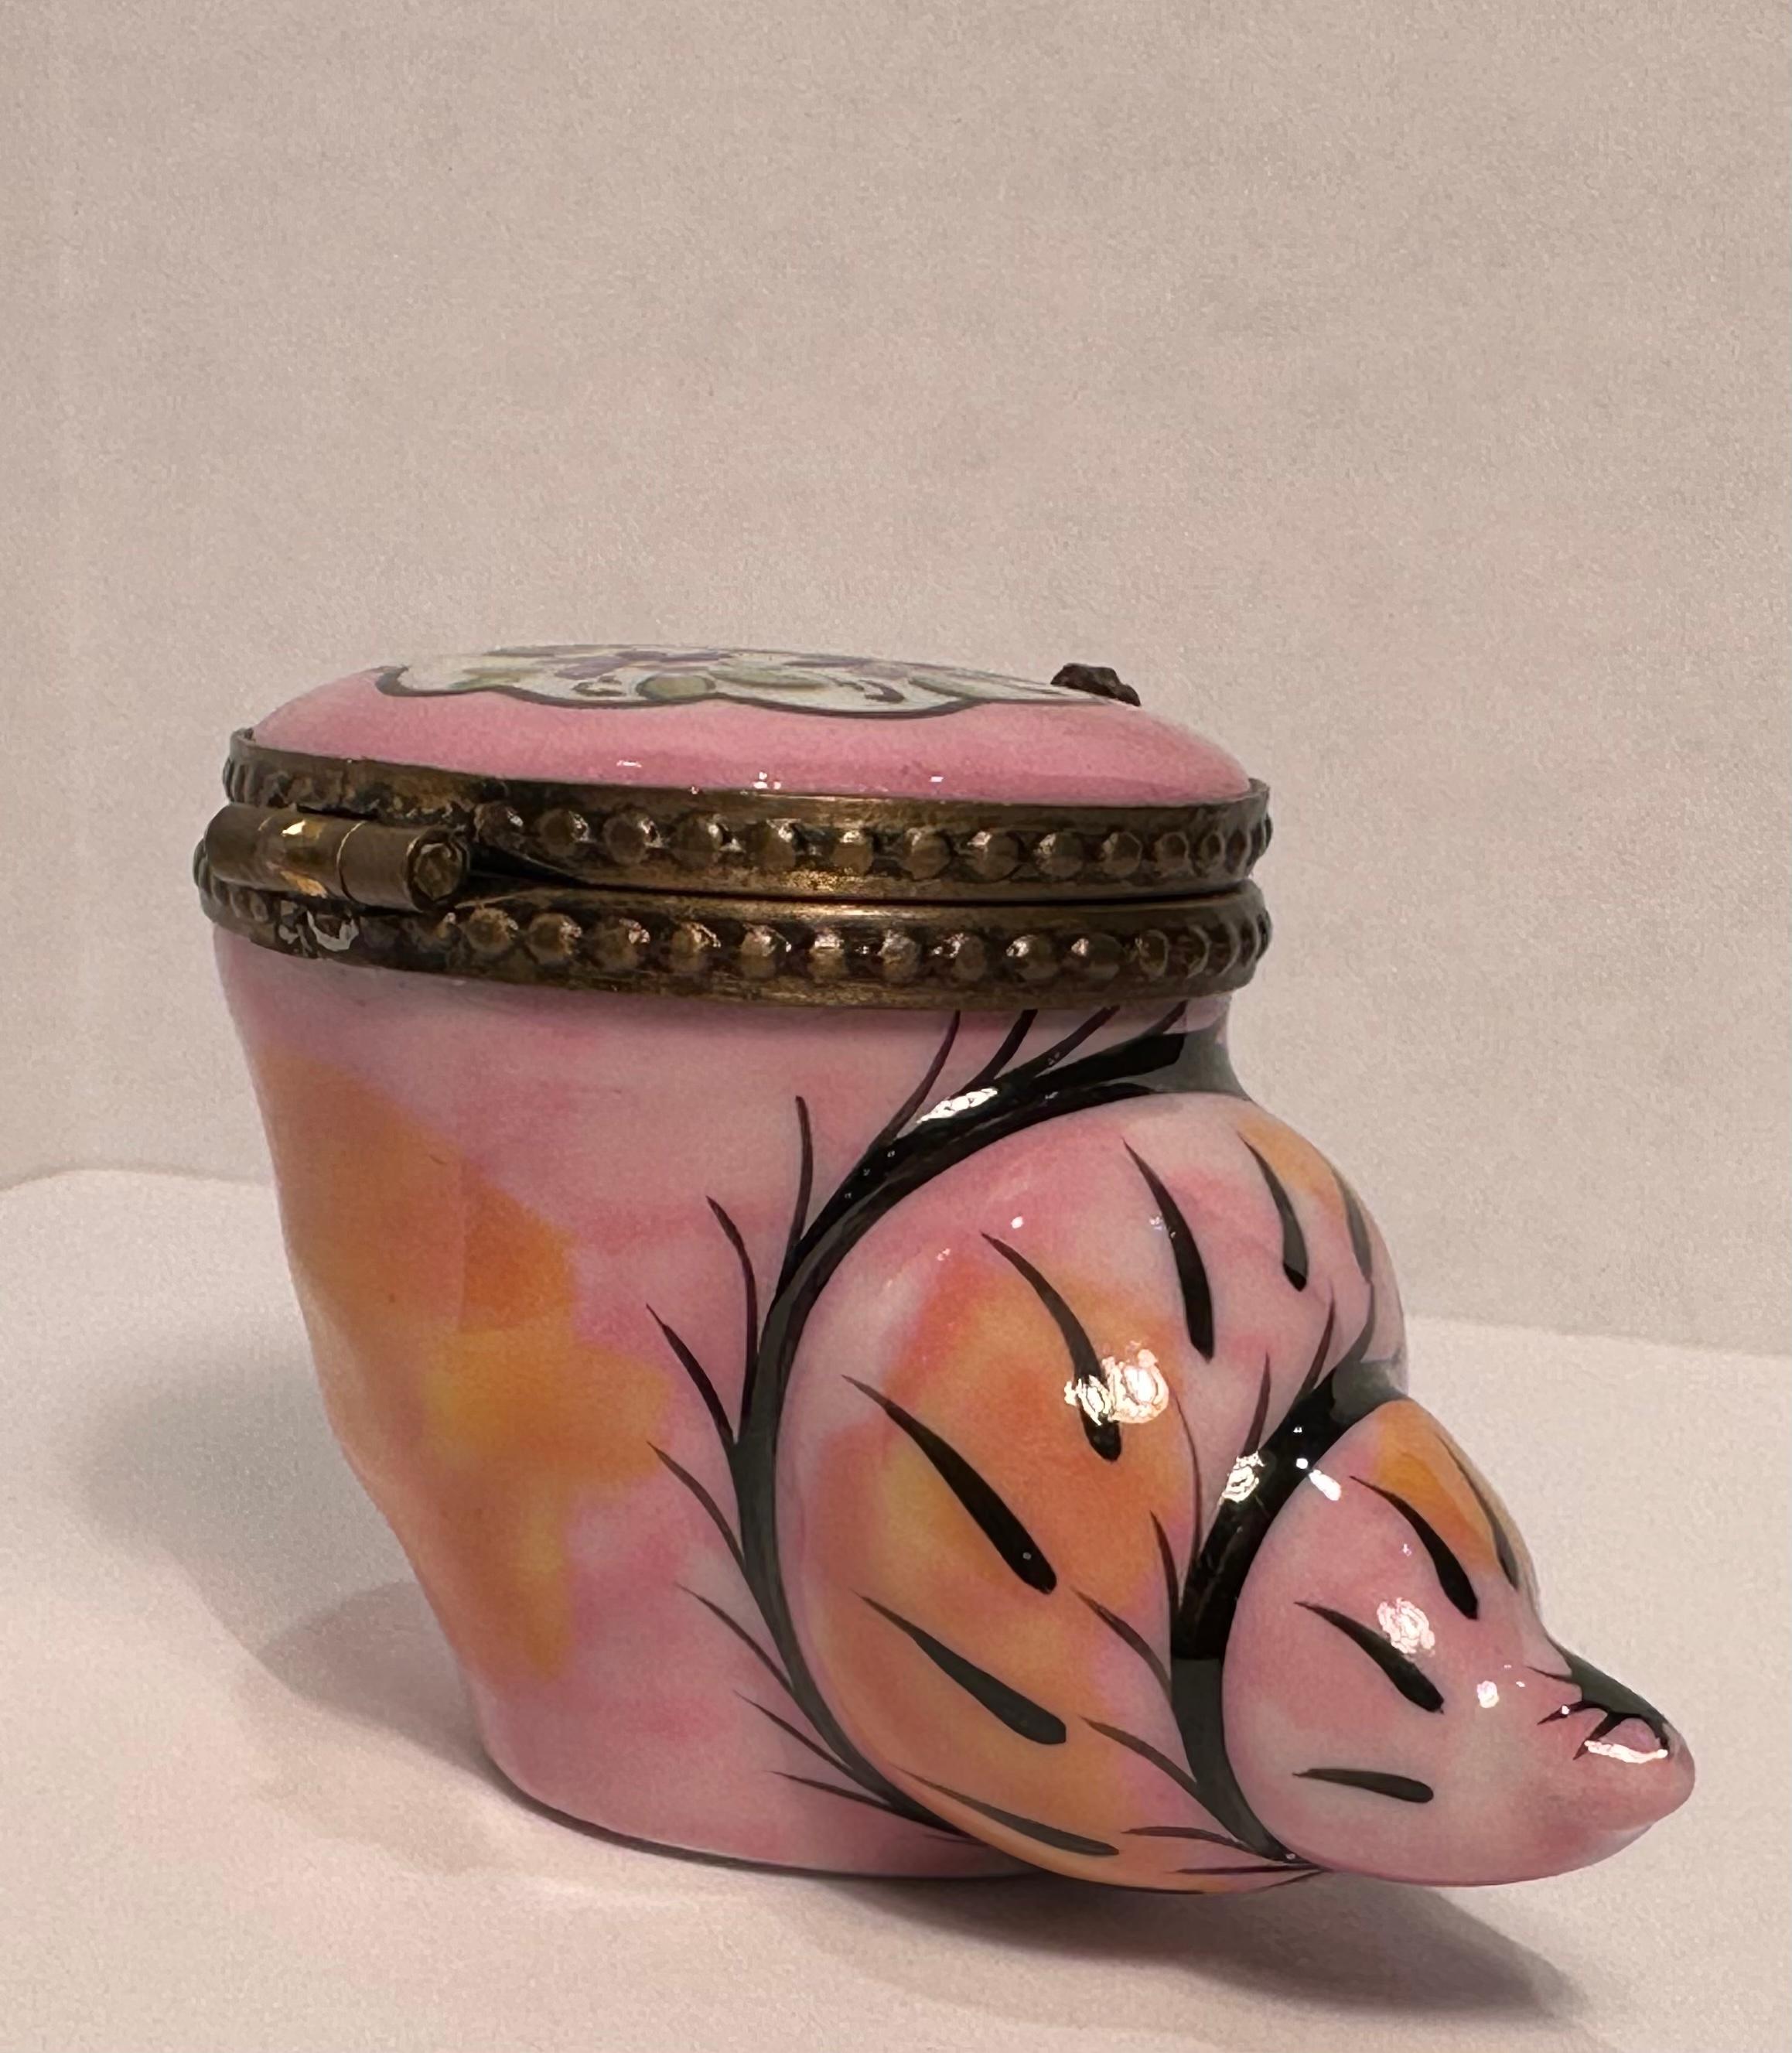 Collectional et très unique, la boîte à bibelots miniature en porcelaine de Limoges est fabriquée et peinte à la main en France. Il présente un magnifique coquillage rose et orange peint à la main avec des accents noirs et de jolies fleurs lavande